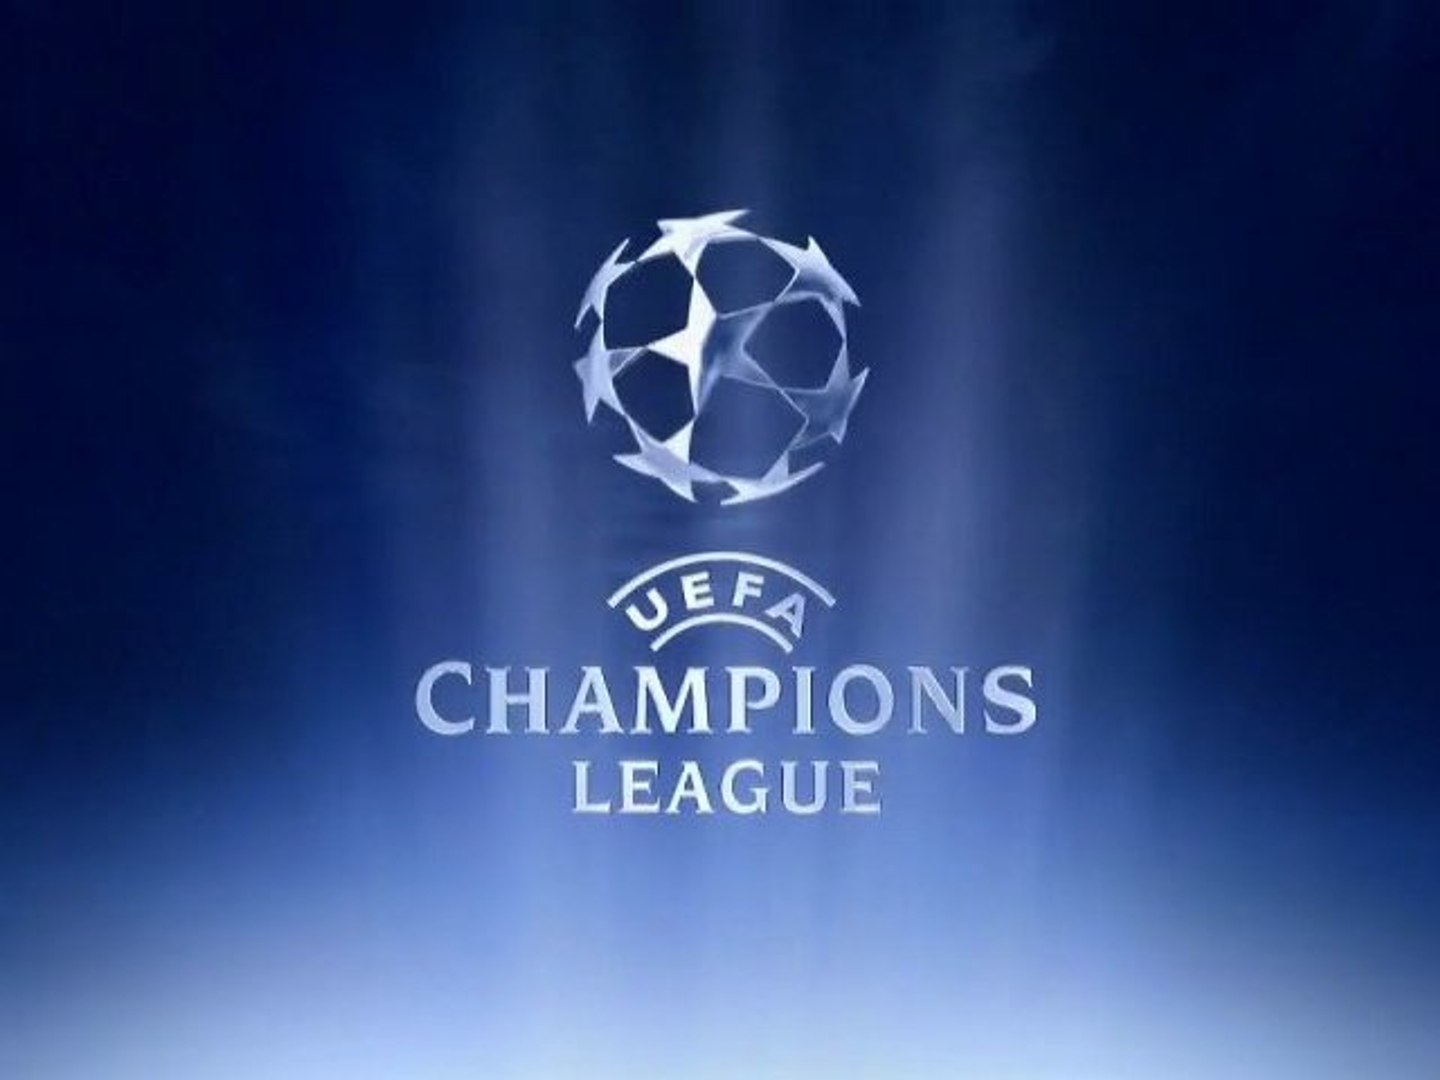 Oitavas de finais da Champions League começam nesta semana - LANCE! Rápido  - Vídeo Dailymotion